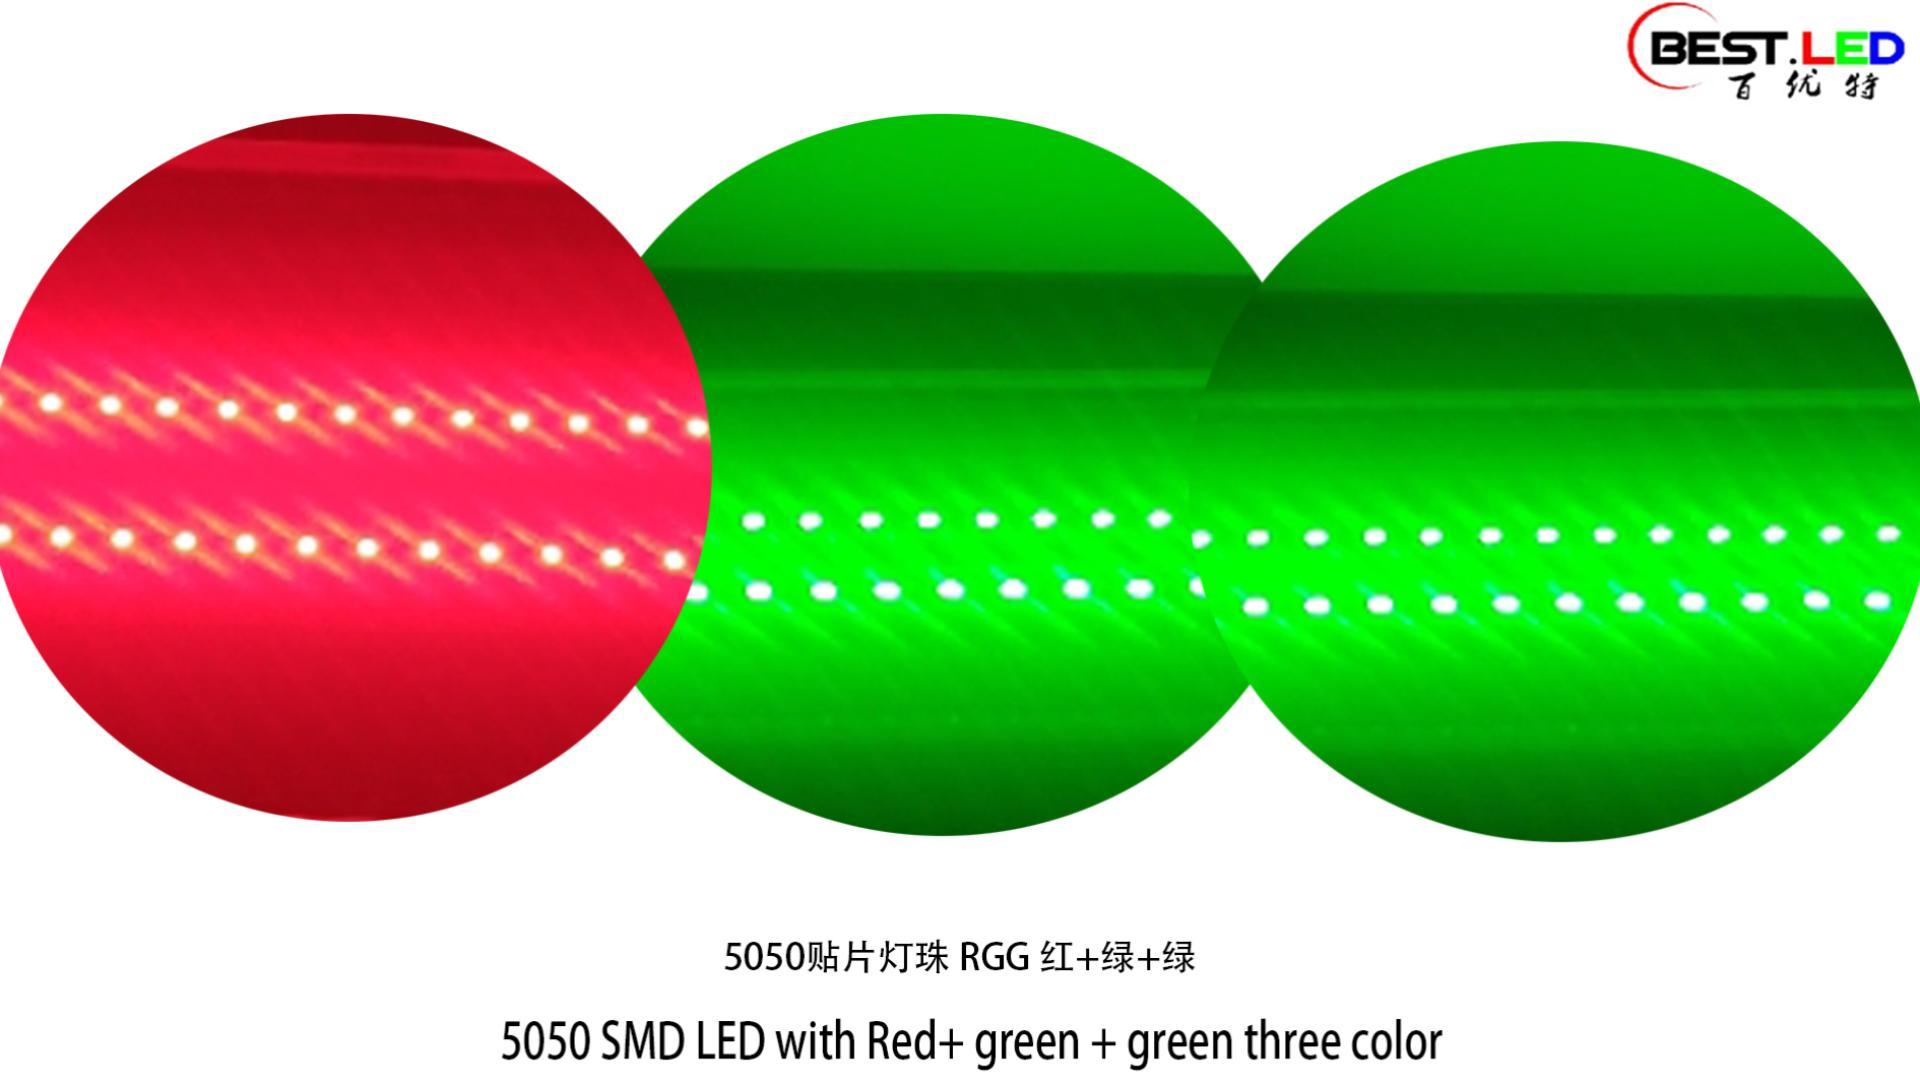 5050 SMD အနီရောင် + အစိမ်းရောင် + အစိမ်းရောင်သုံးရောင်နှင့်အတူ ဦး ဆောင်ခဲ့သည်